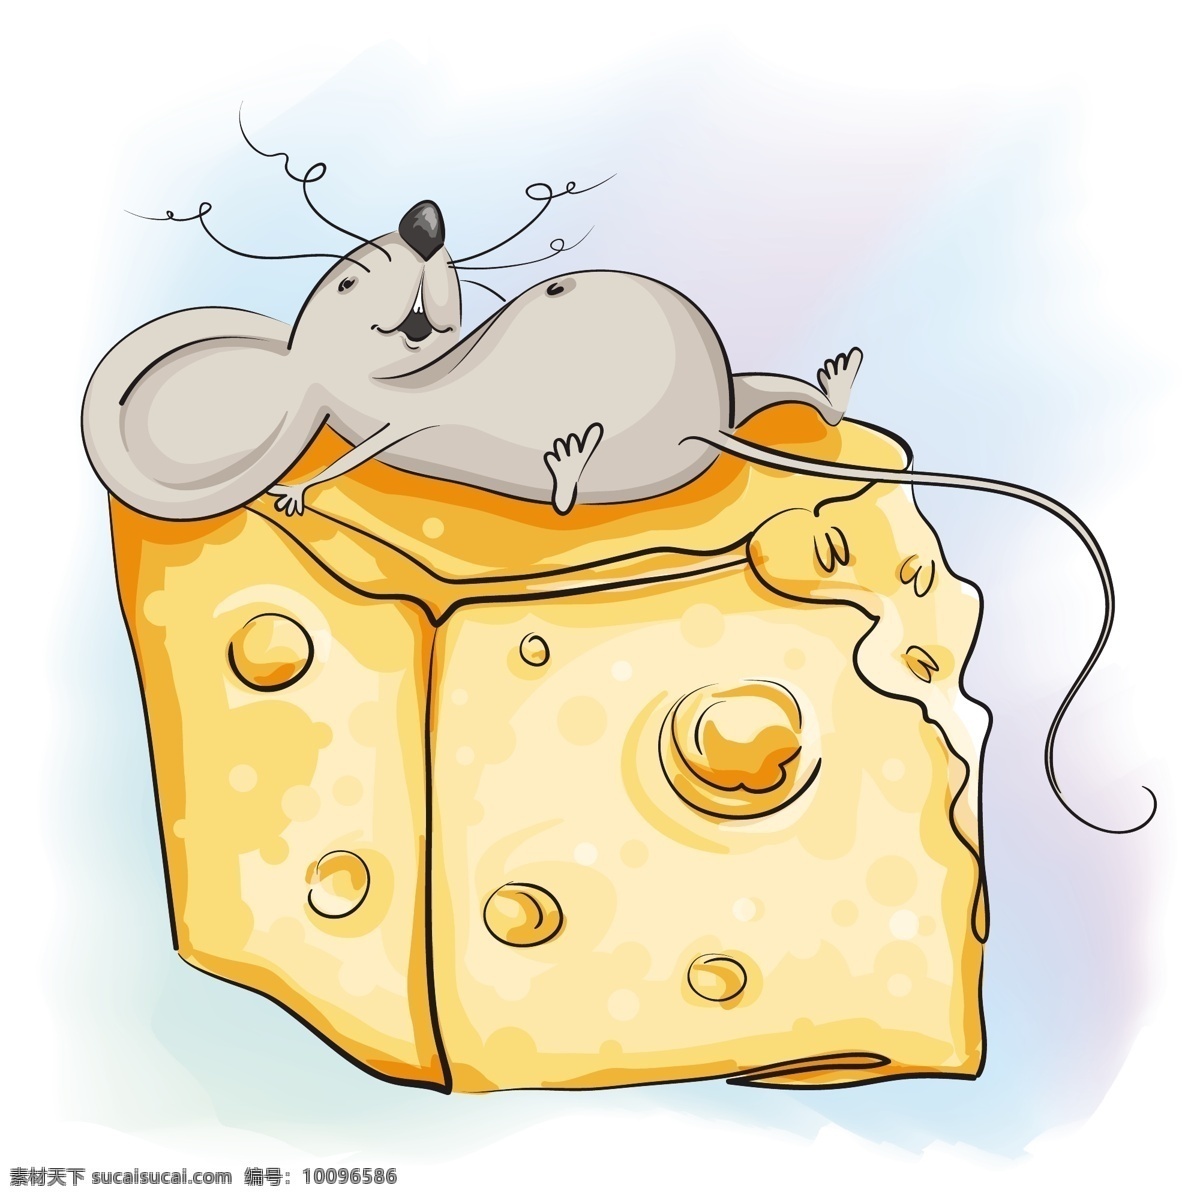 老鼠与奶酪 老鼠奶酪 老鼠吃奶酪 偷吃老鼠 奶酪 卡通老鼠 老鼠 可爱老鼠 动物 动物素材 老鼠素材 卡通设计